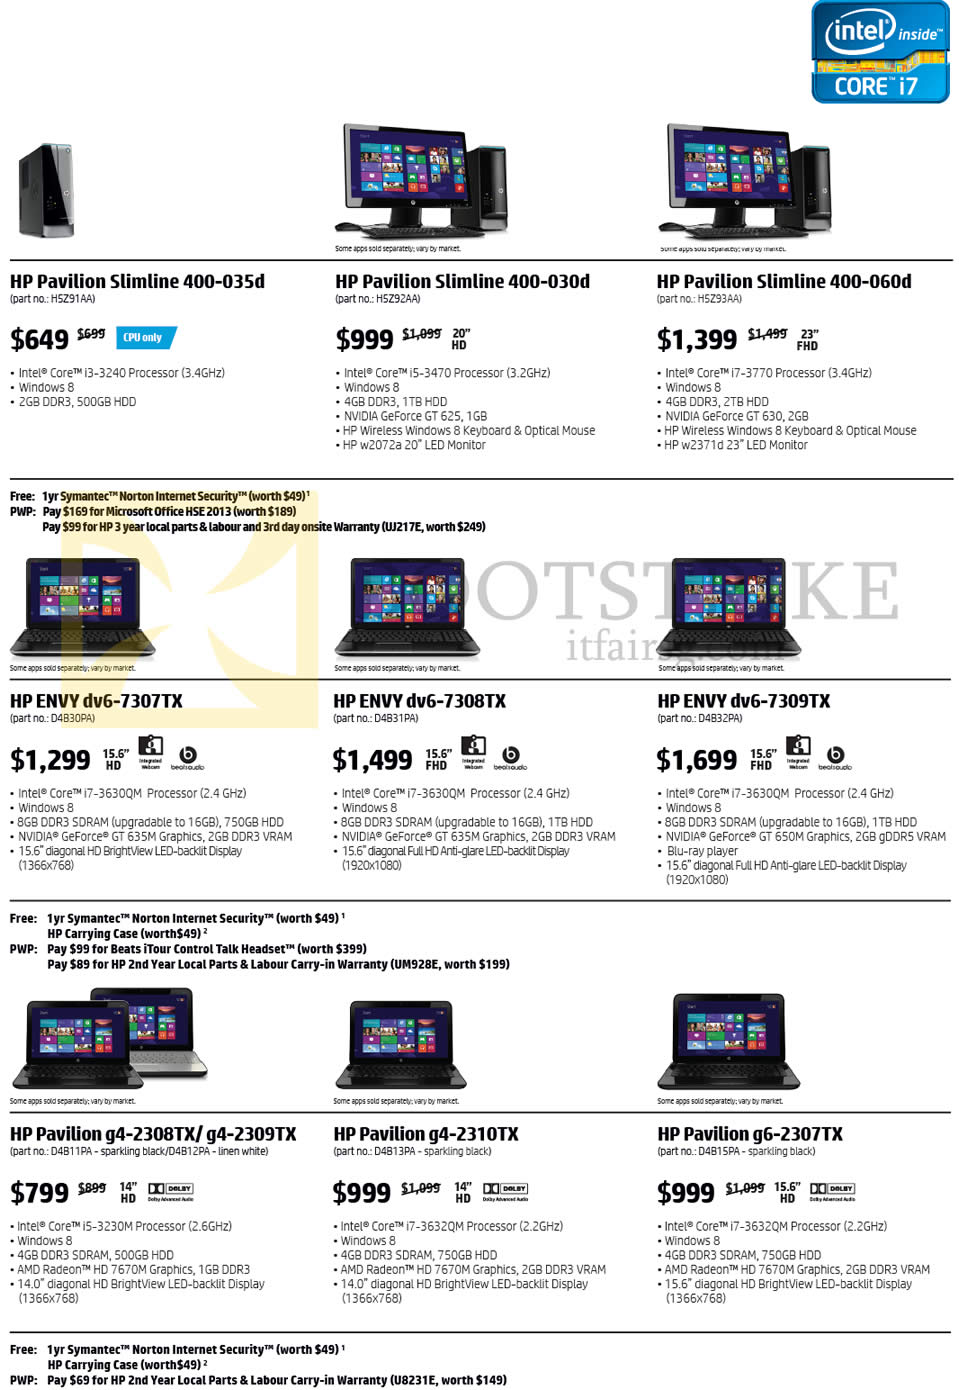 COMEX 2013 price list image brochure of HP Desktop PCs Notebooks Pavilion Slimline 400-035d, 400-030d, 400-060d, ENVY Dv6-7307TX, Dv6-7308TX, Dv6-7309TX, G4-2308TX, G4-2309TX, G4-2310TX, G6-2307TX